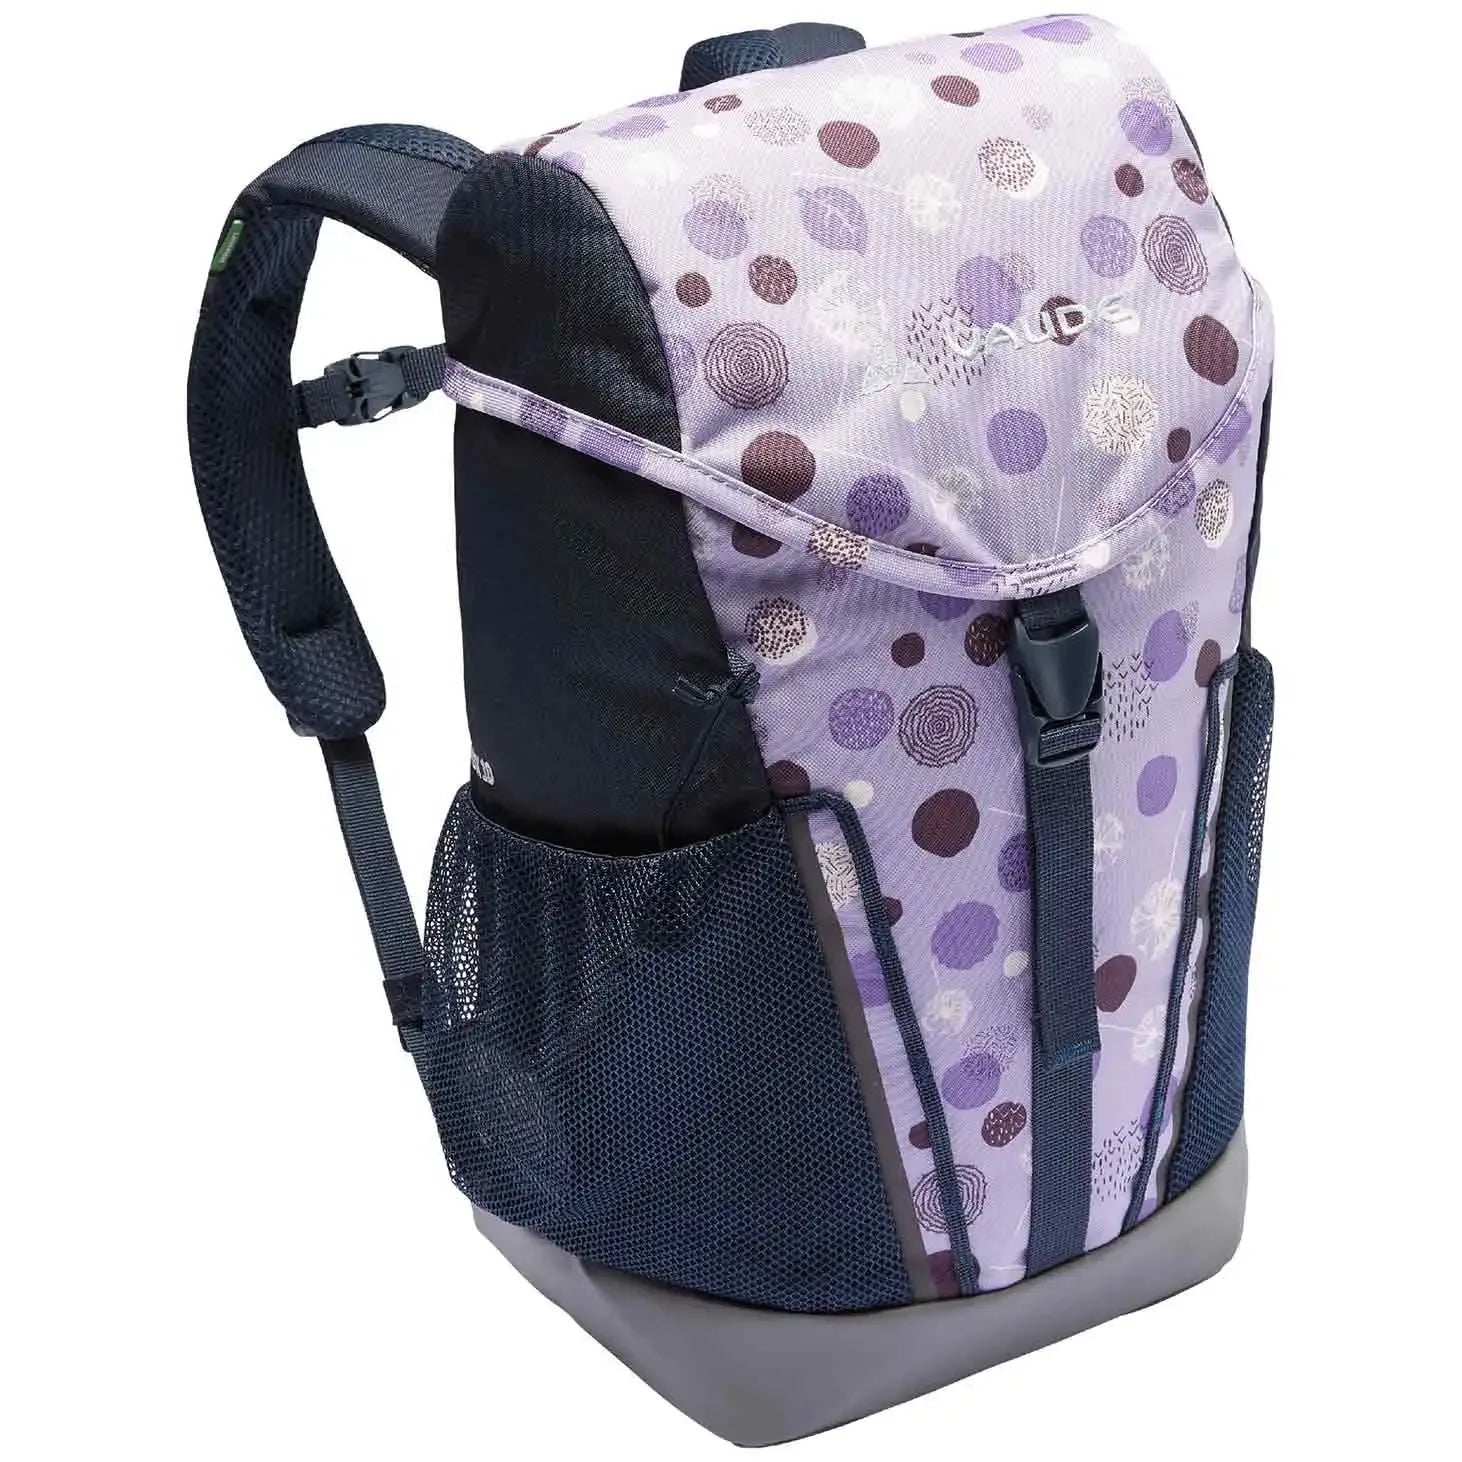 Vaude Family Puck 10 sac à dos enfant 38 cm - lilas pastel